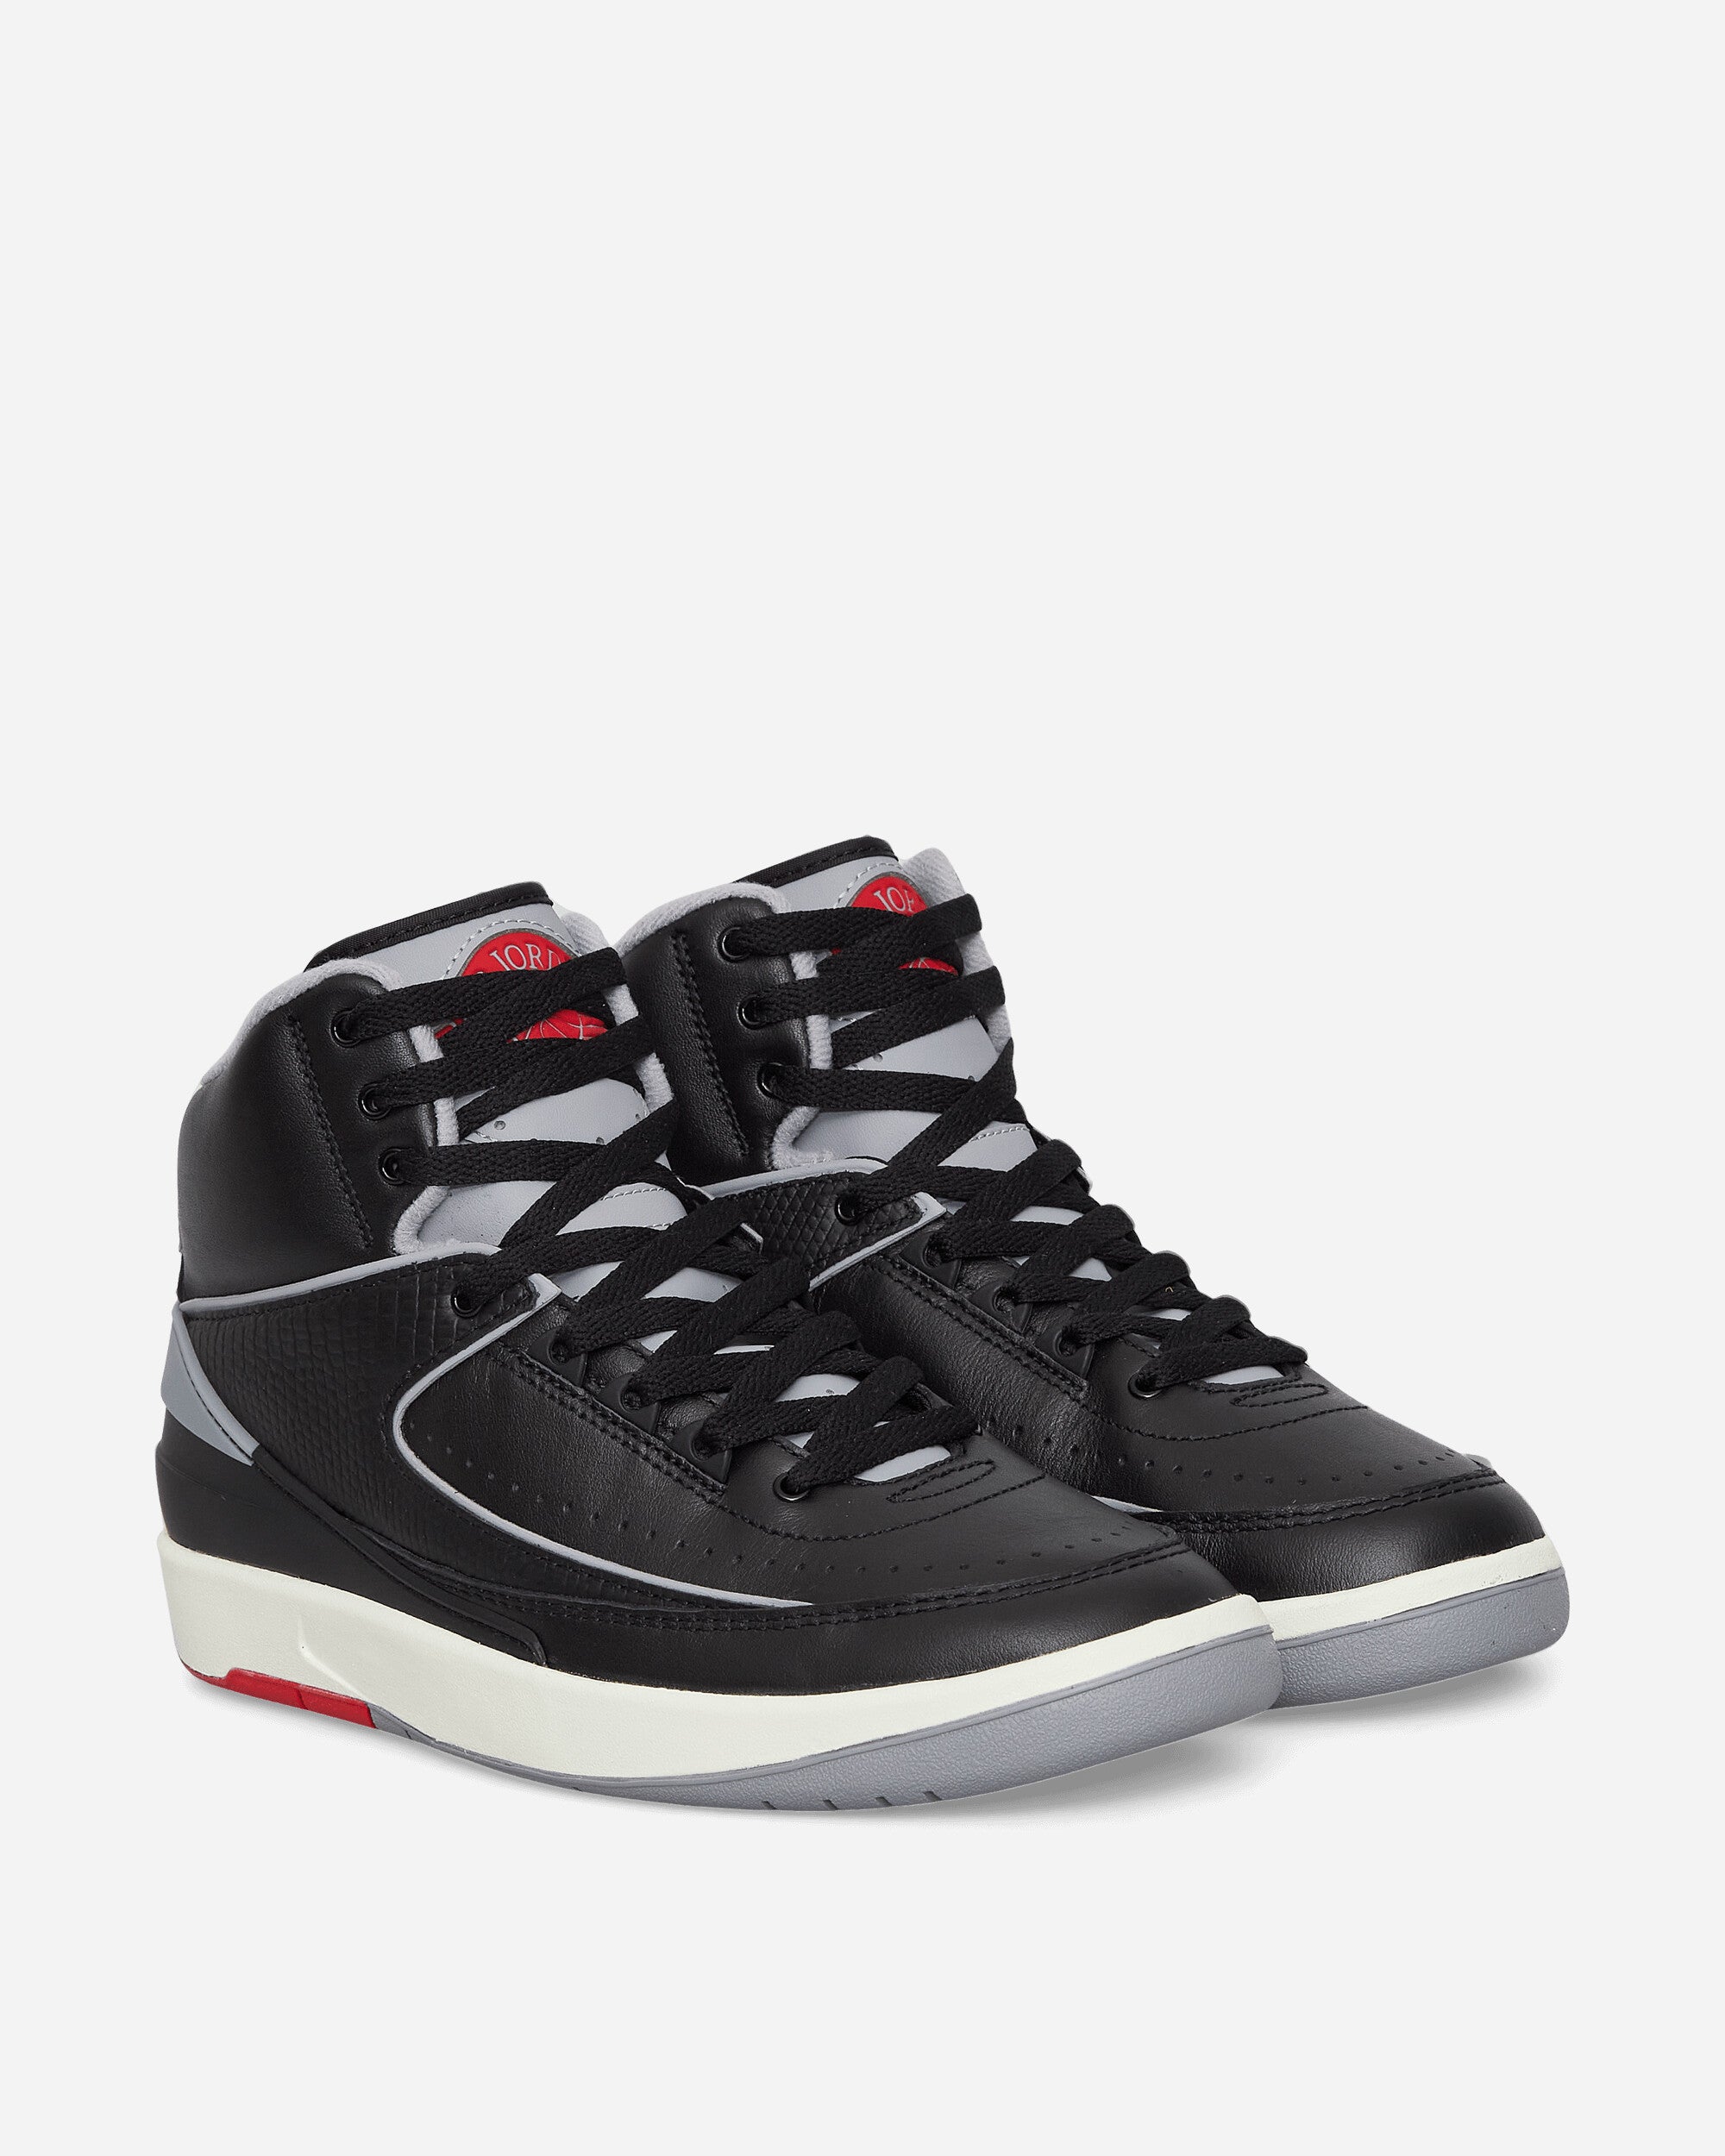 Air Jordan 2 Retro Sneakers Black / Cement Grey